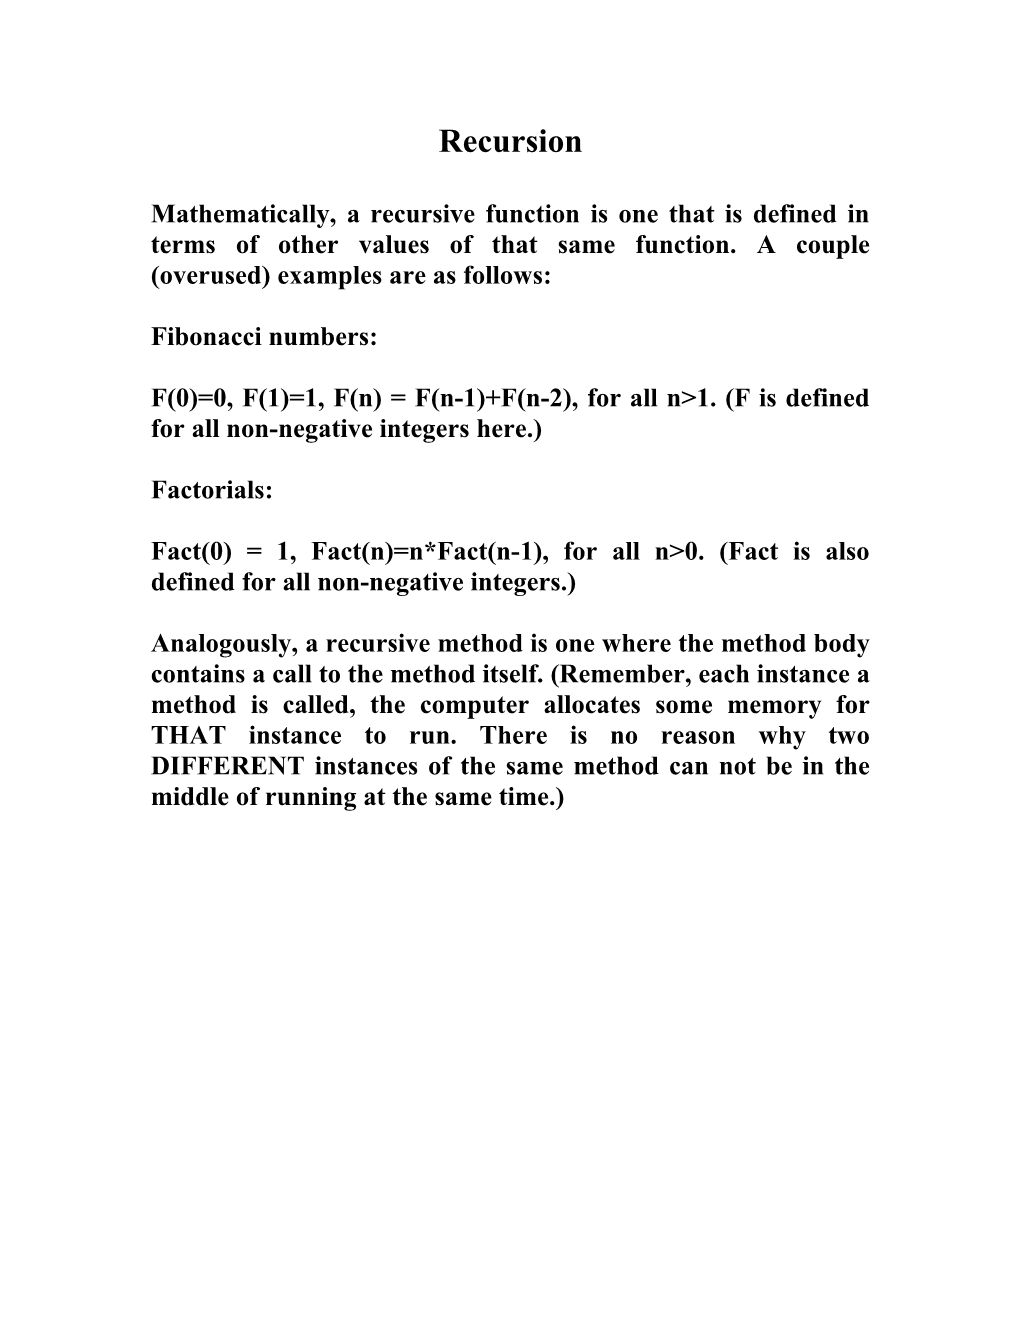 F(0)=0, F(1)=1, F(N) = F(N-1)+F(N-2), for All N&gt;1. (F Is Defined for All Non-Negative